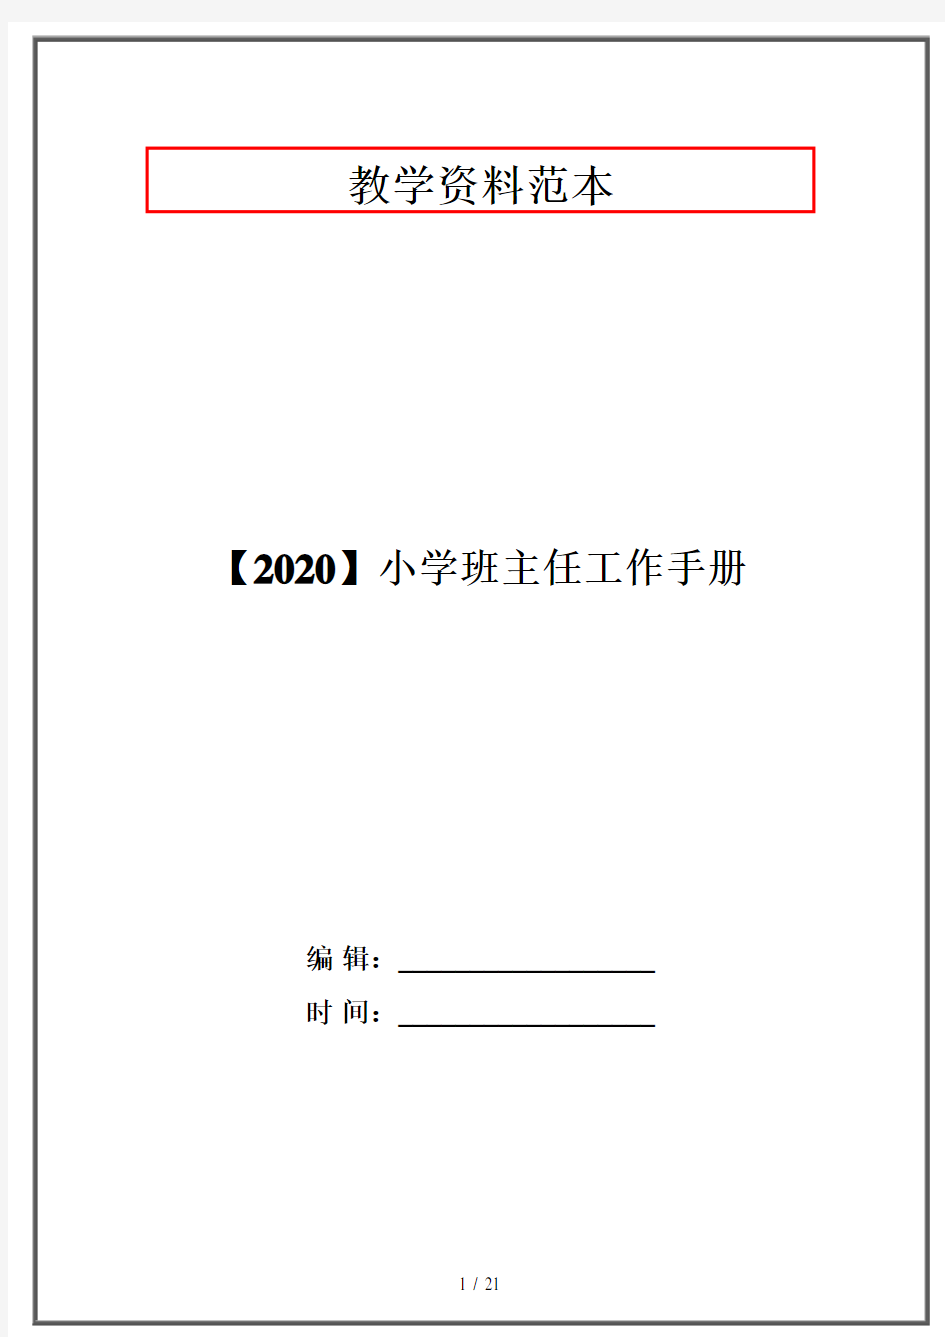 【2020】小学班主任工作手册